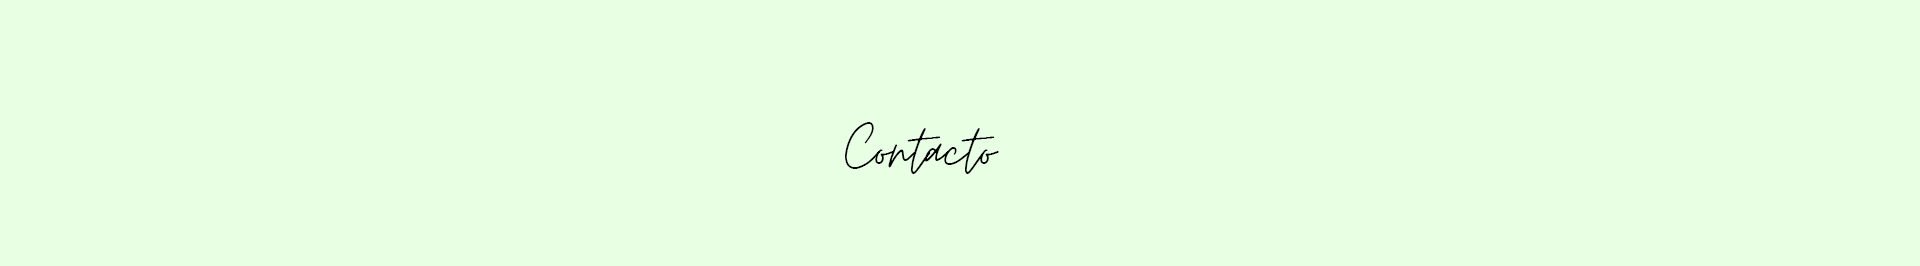 Contacto-cabecera